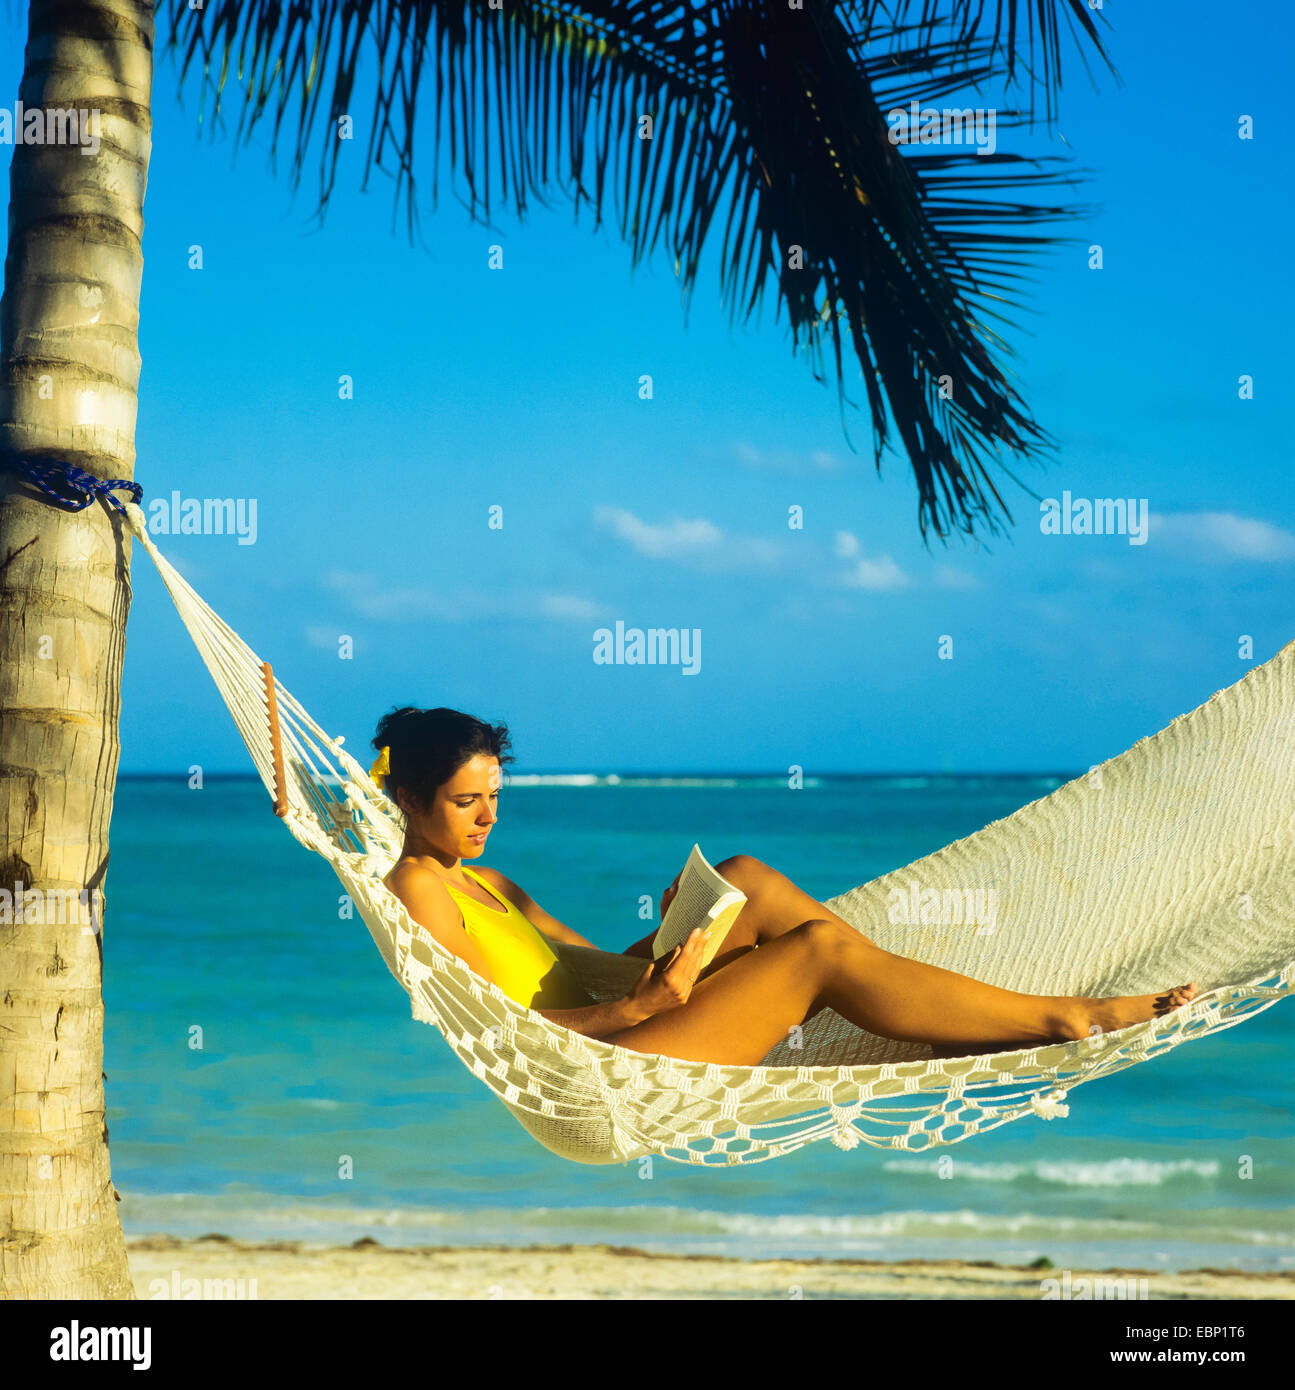 Jeune femme lisant un livre en hamac sur la plage des Caraïbes Guadeloupe Antilles Françaises Petites Antilles Banque D'Images